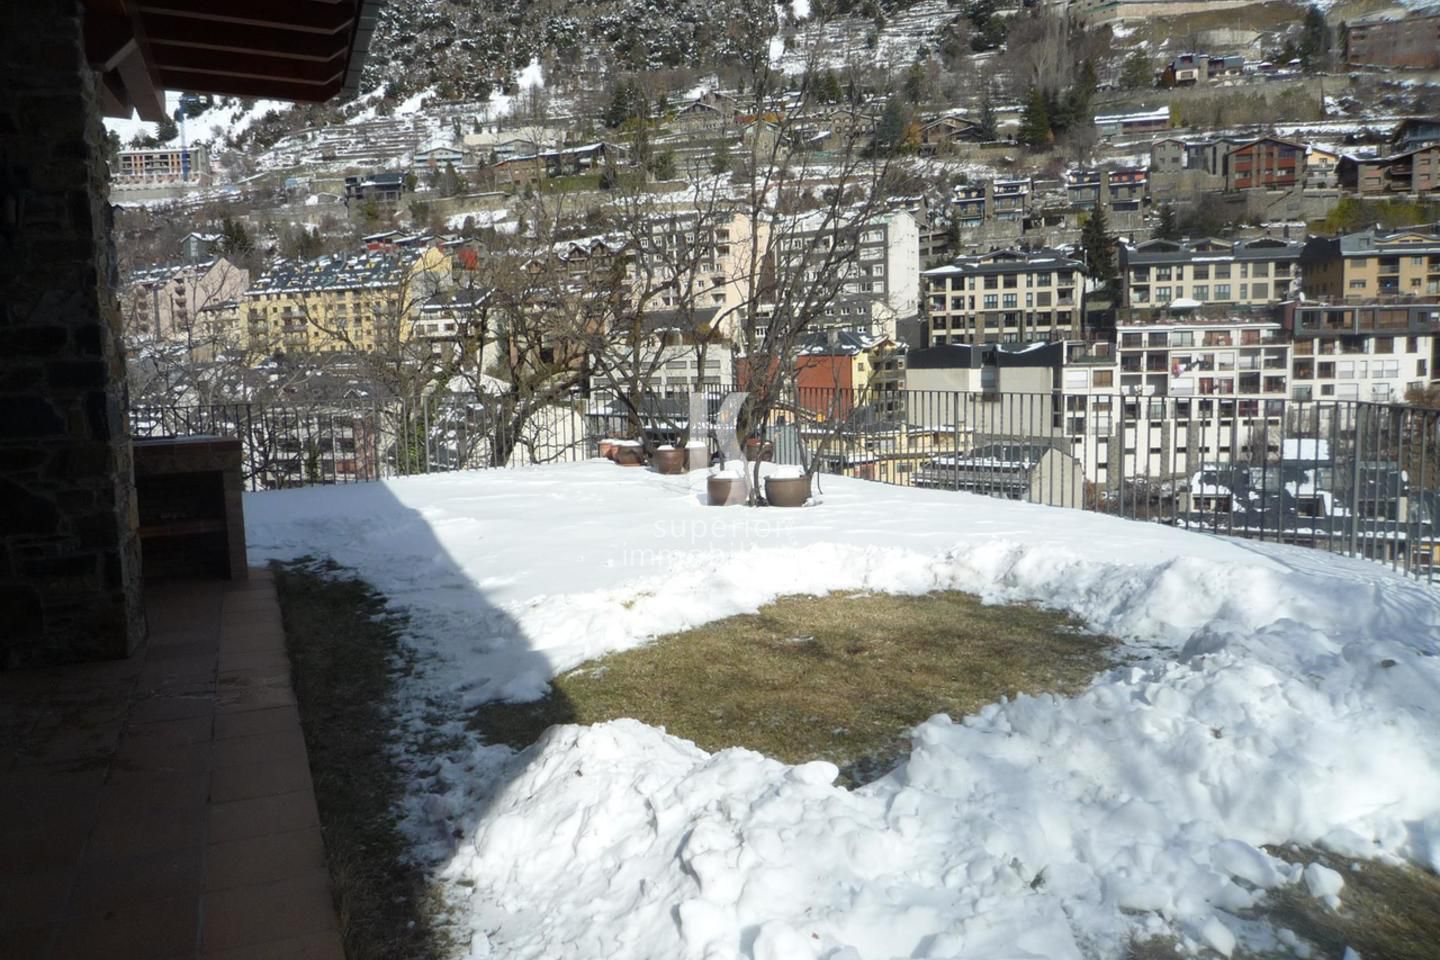 Chalet en venta en Andorra la Vella, 6 habitaciones, 1000 metros